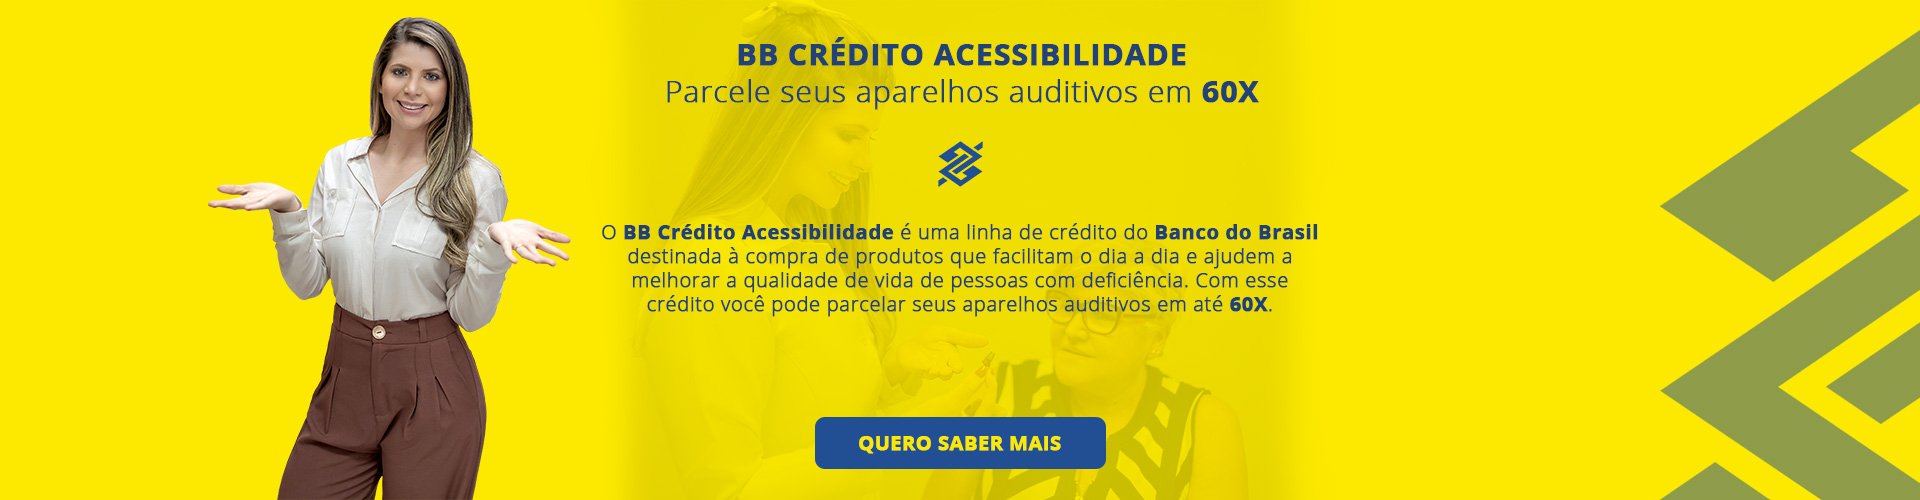 Banner de Propaganda do Banco do Brasil